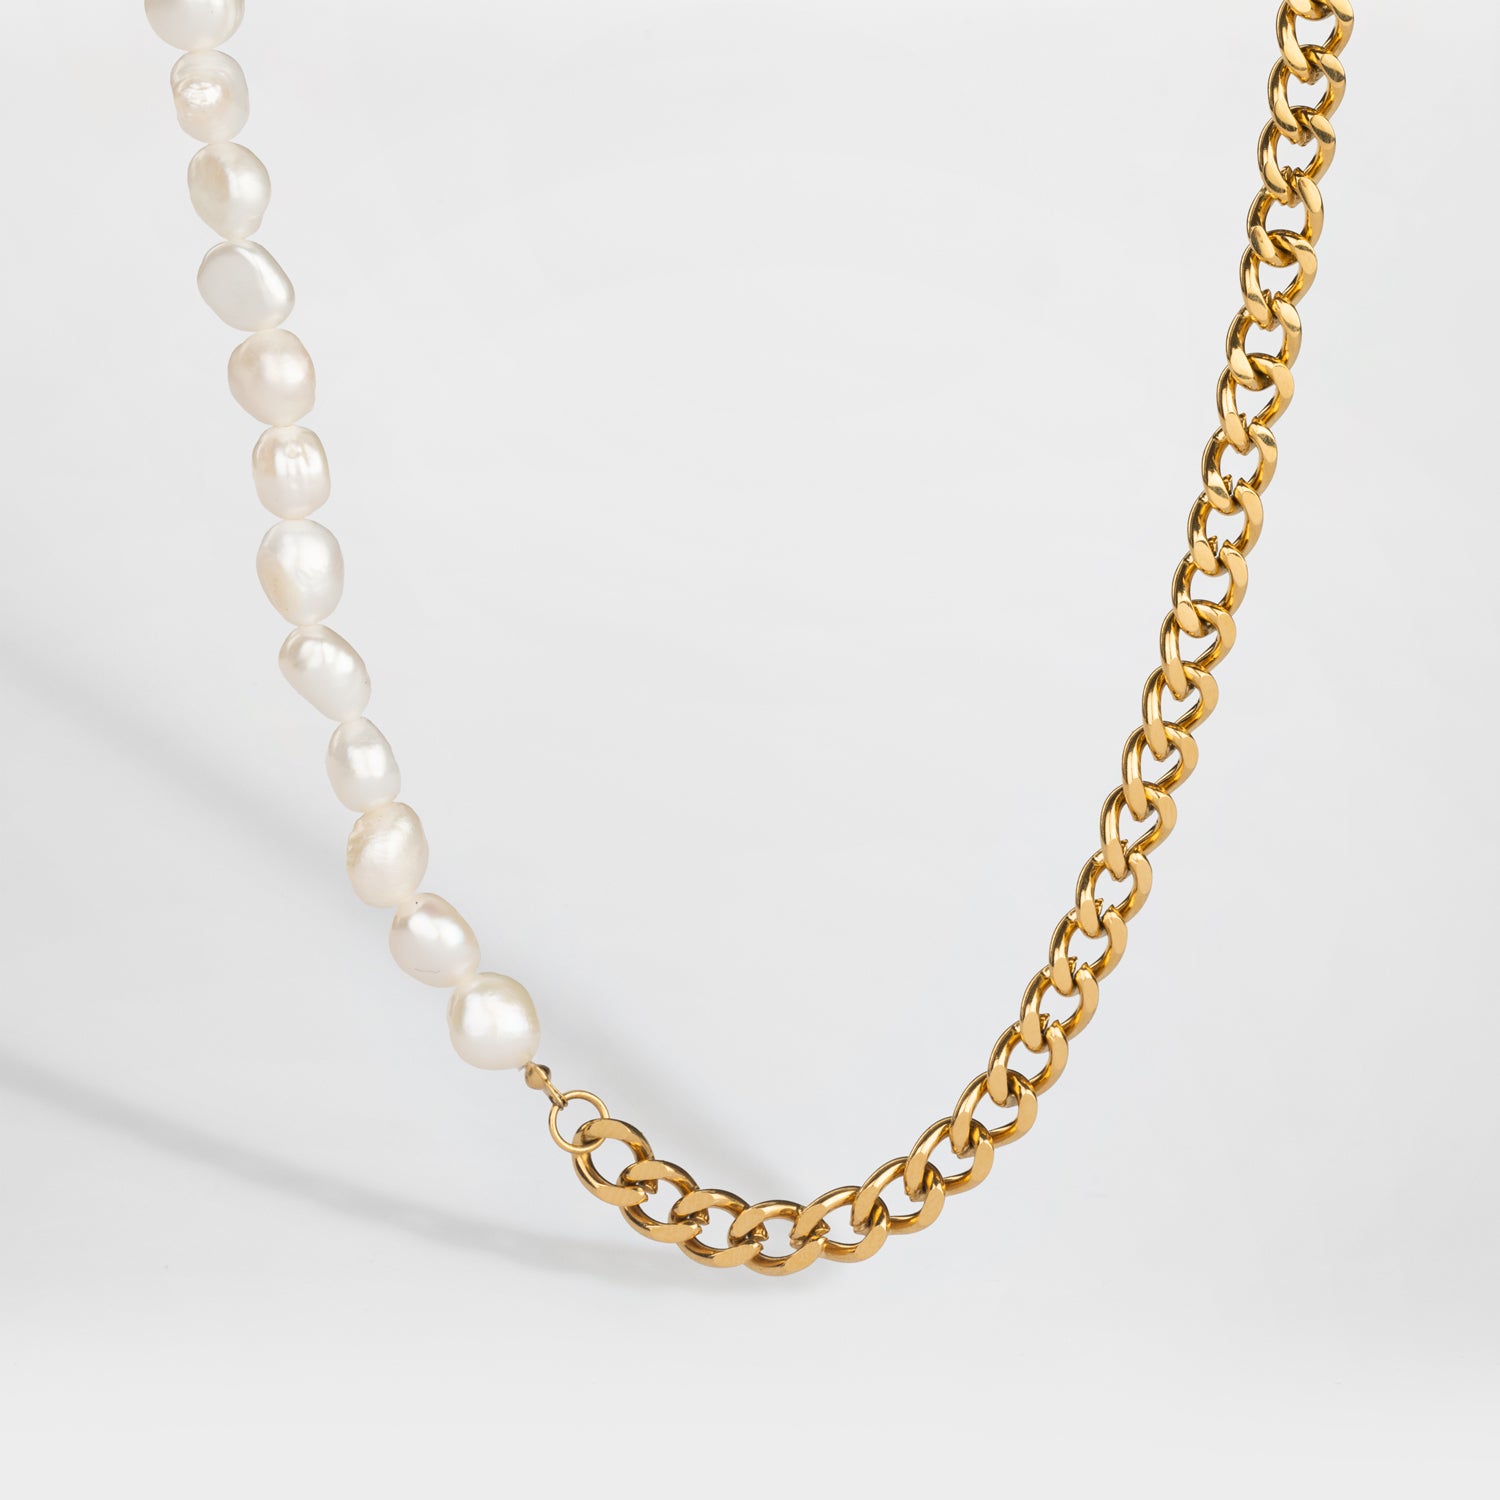 NL Kattegat Pearl pendant - Gold-toned